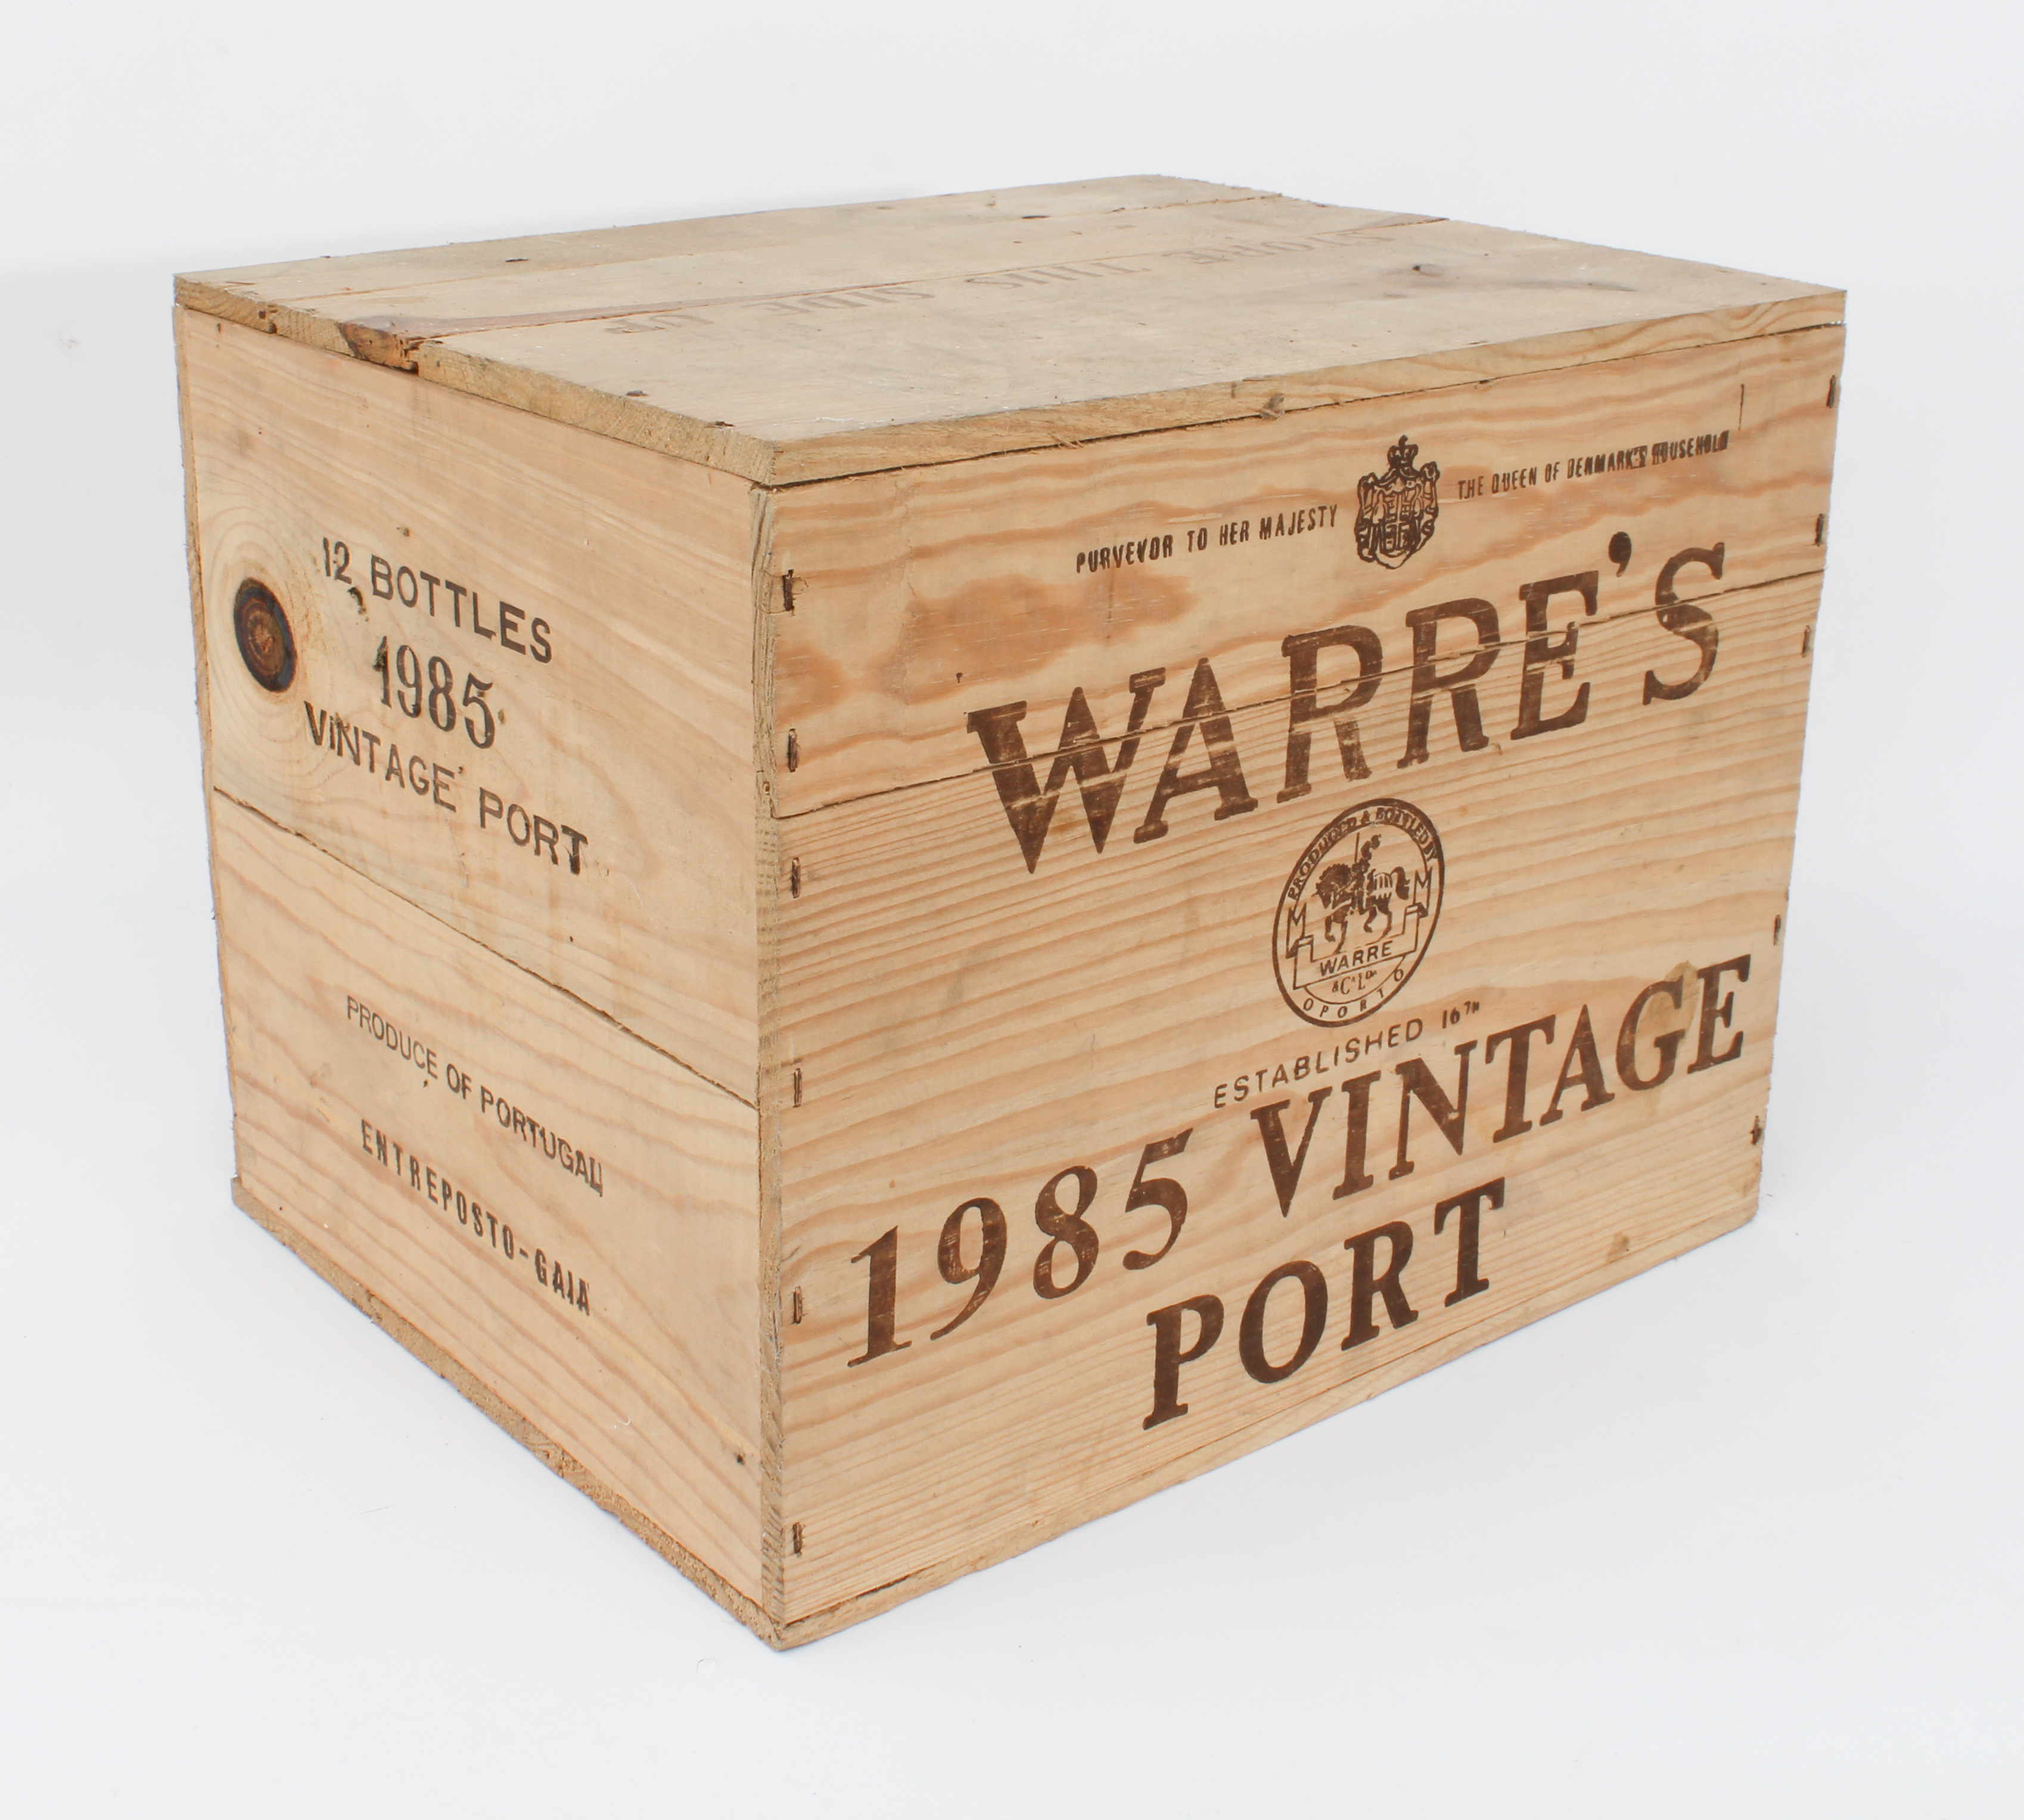 A 12-bottle case of Warre's 1985 vintage port